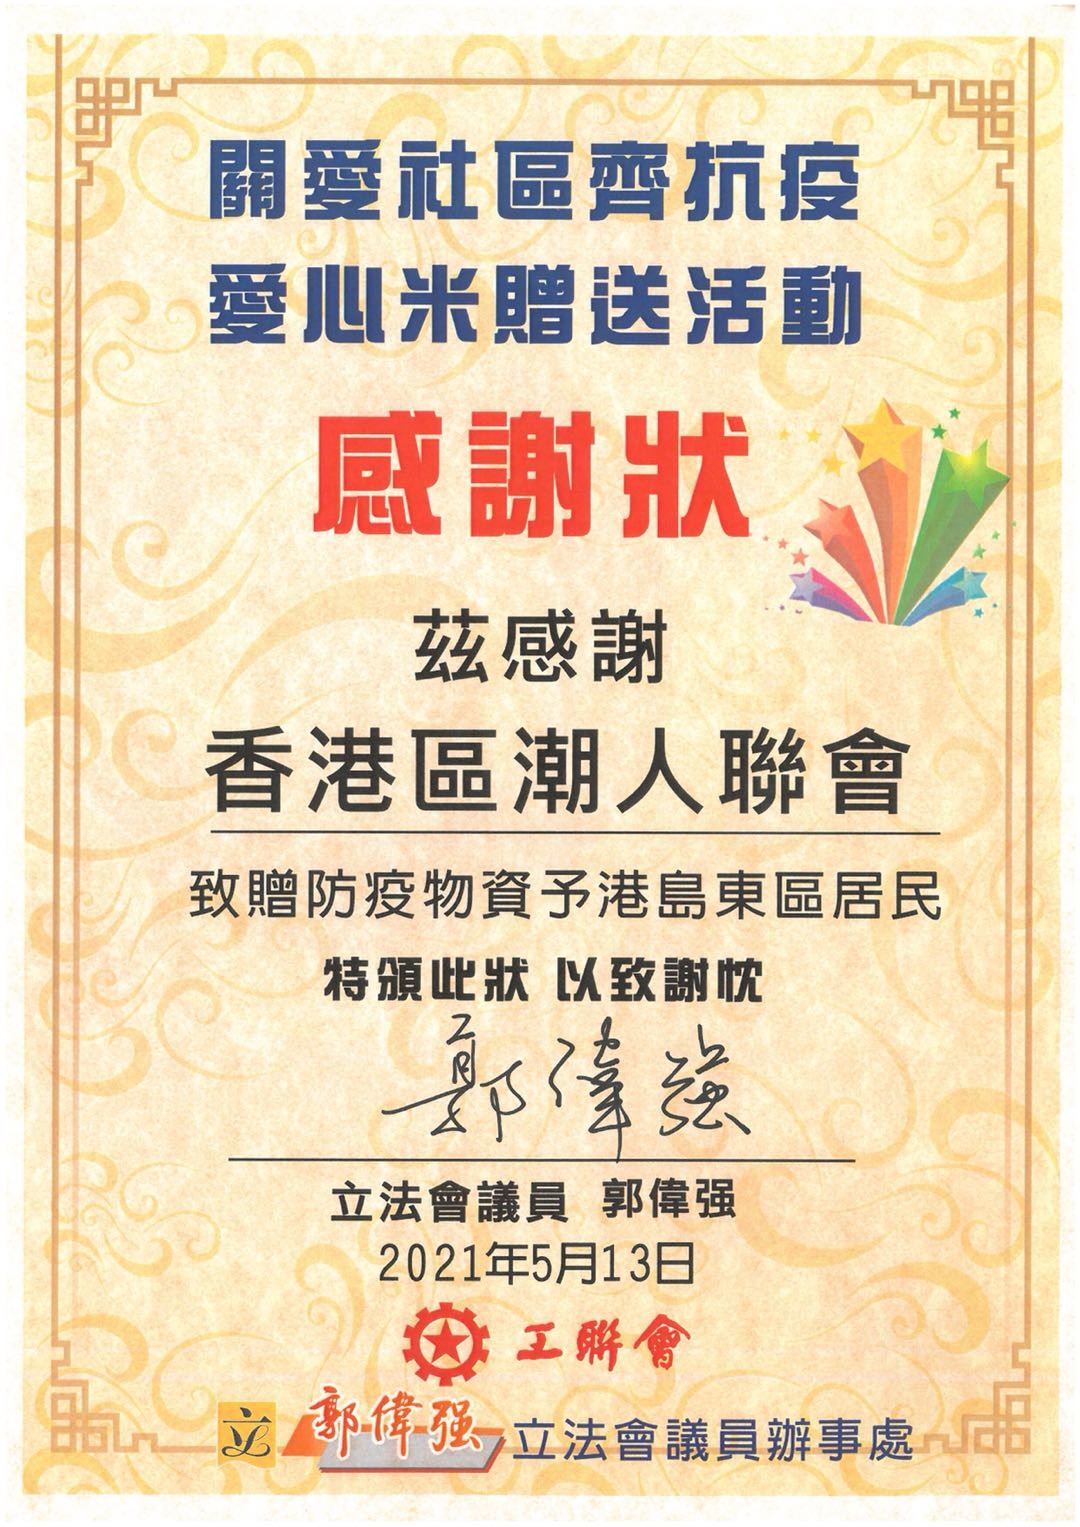 香港區潮人聯會舉辦福米贈送儀式-11